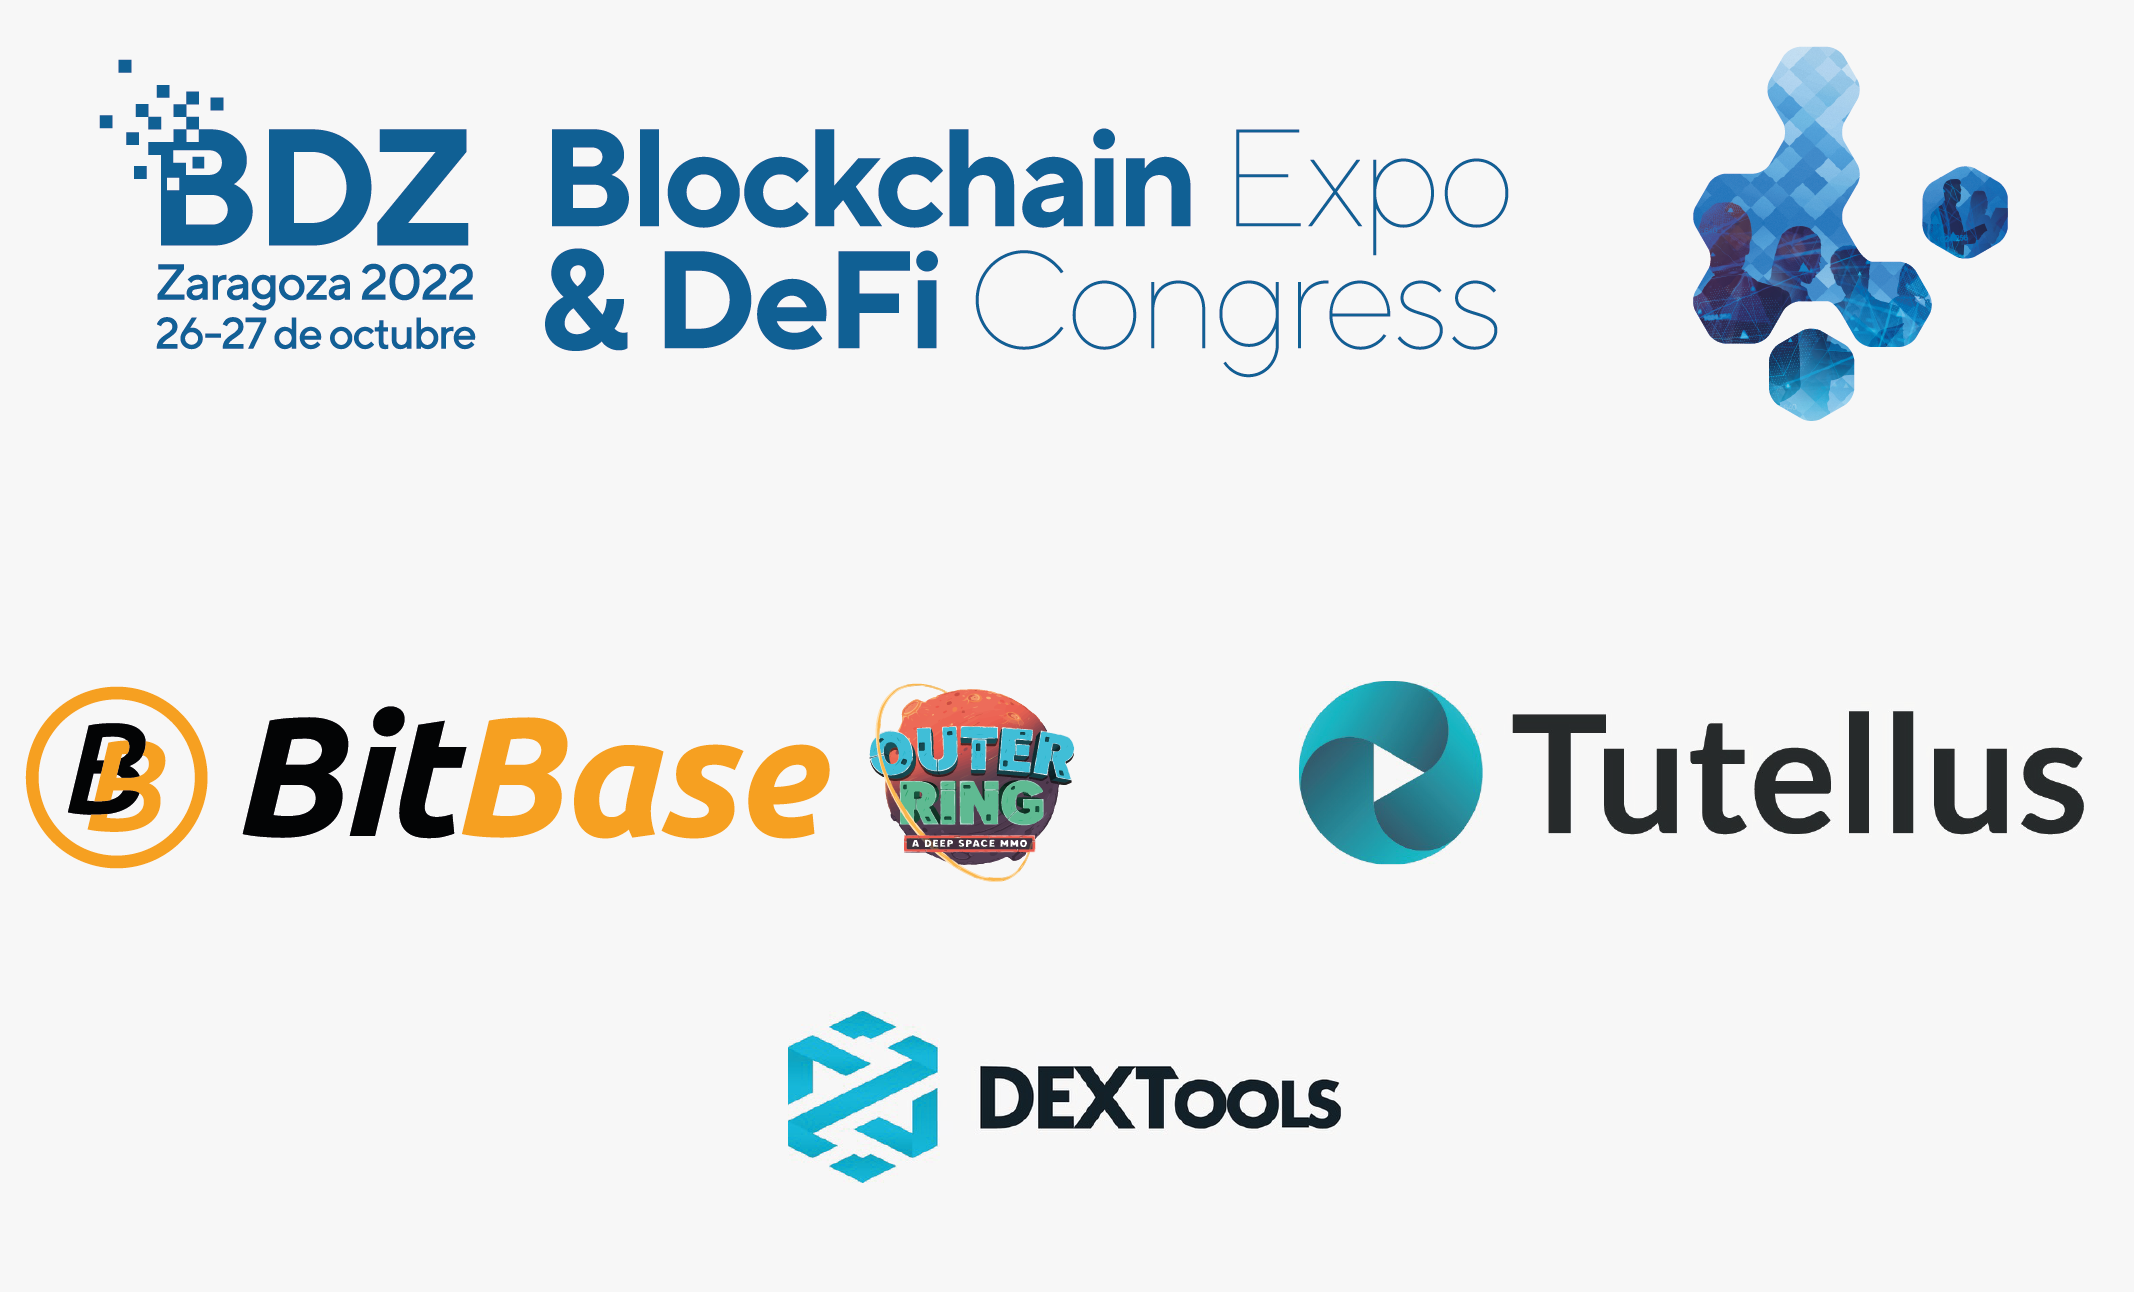 BitBase-OuterRing y Tutellus impulsan BDZ 2022, el congreso de Finanzas Descentralizadas, Criptomonedas y Blockchain